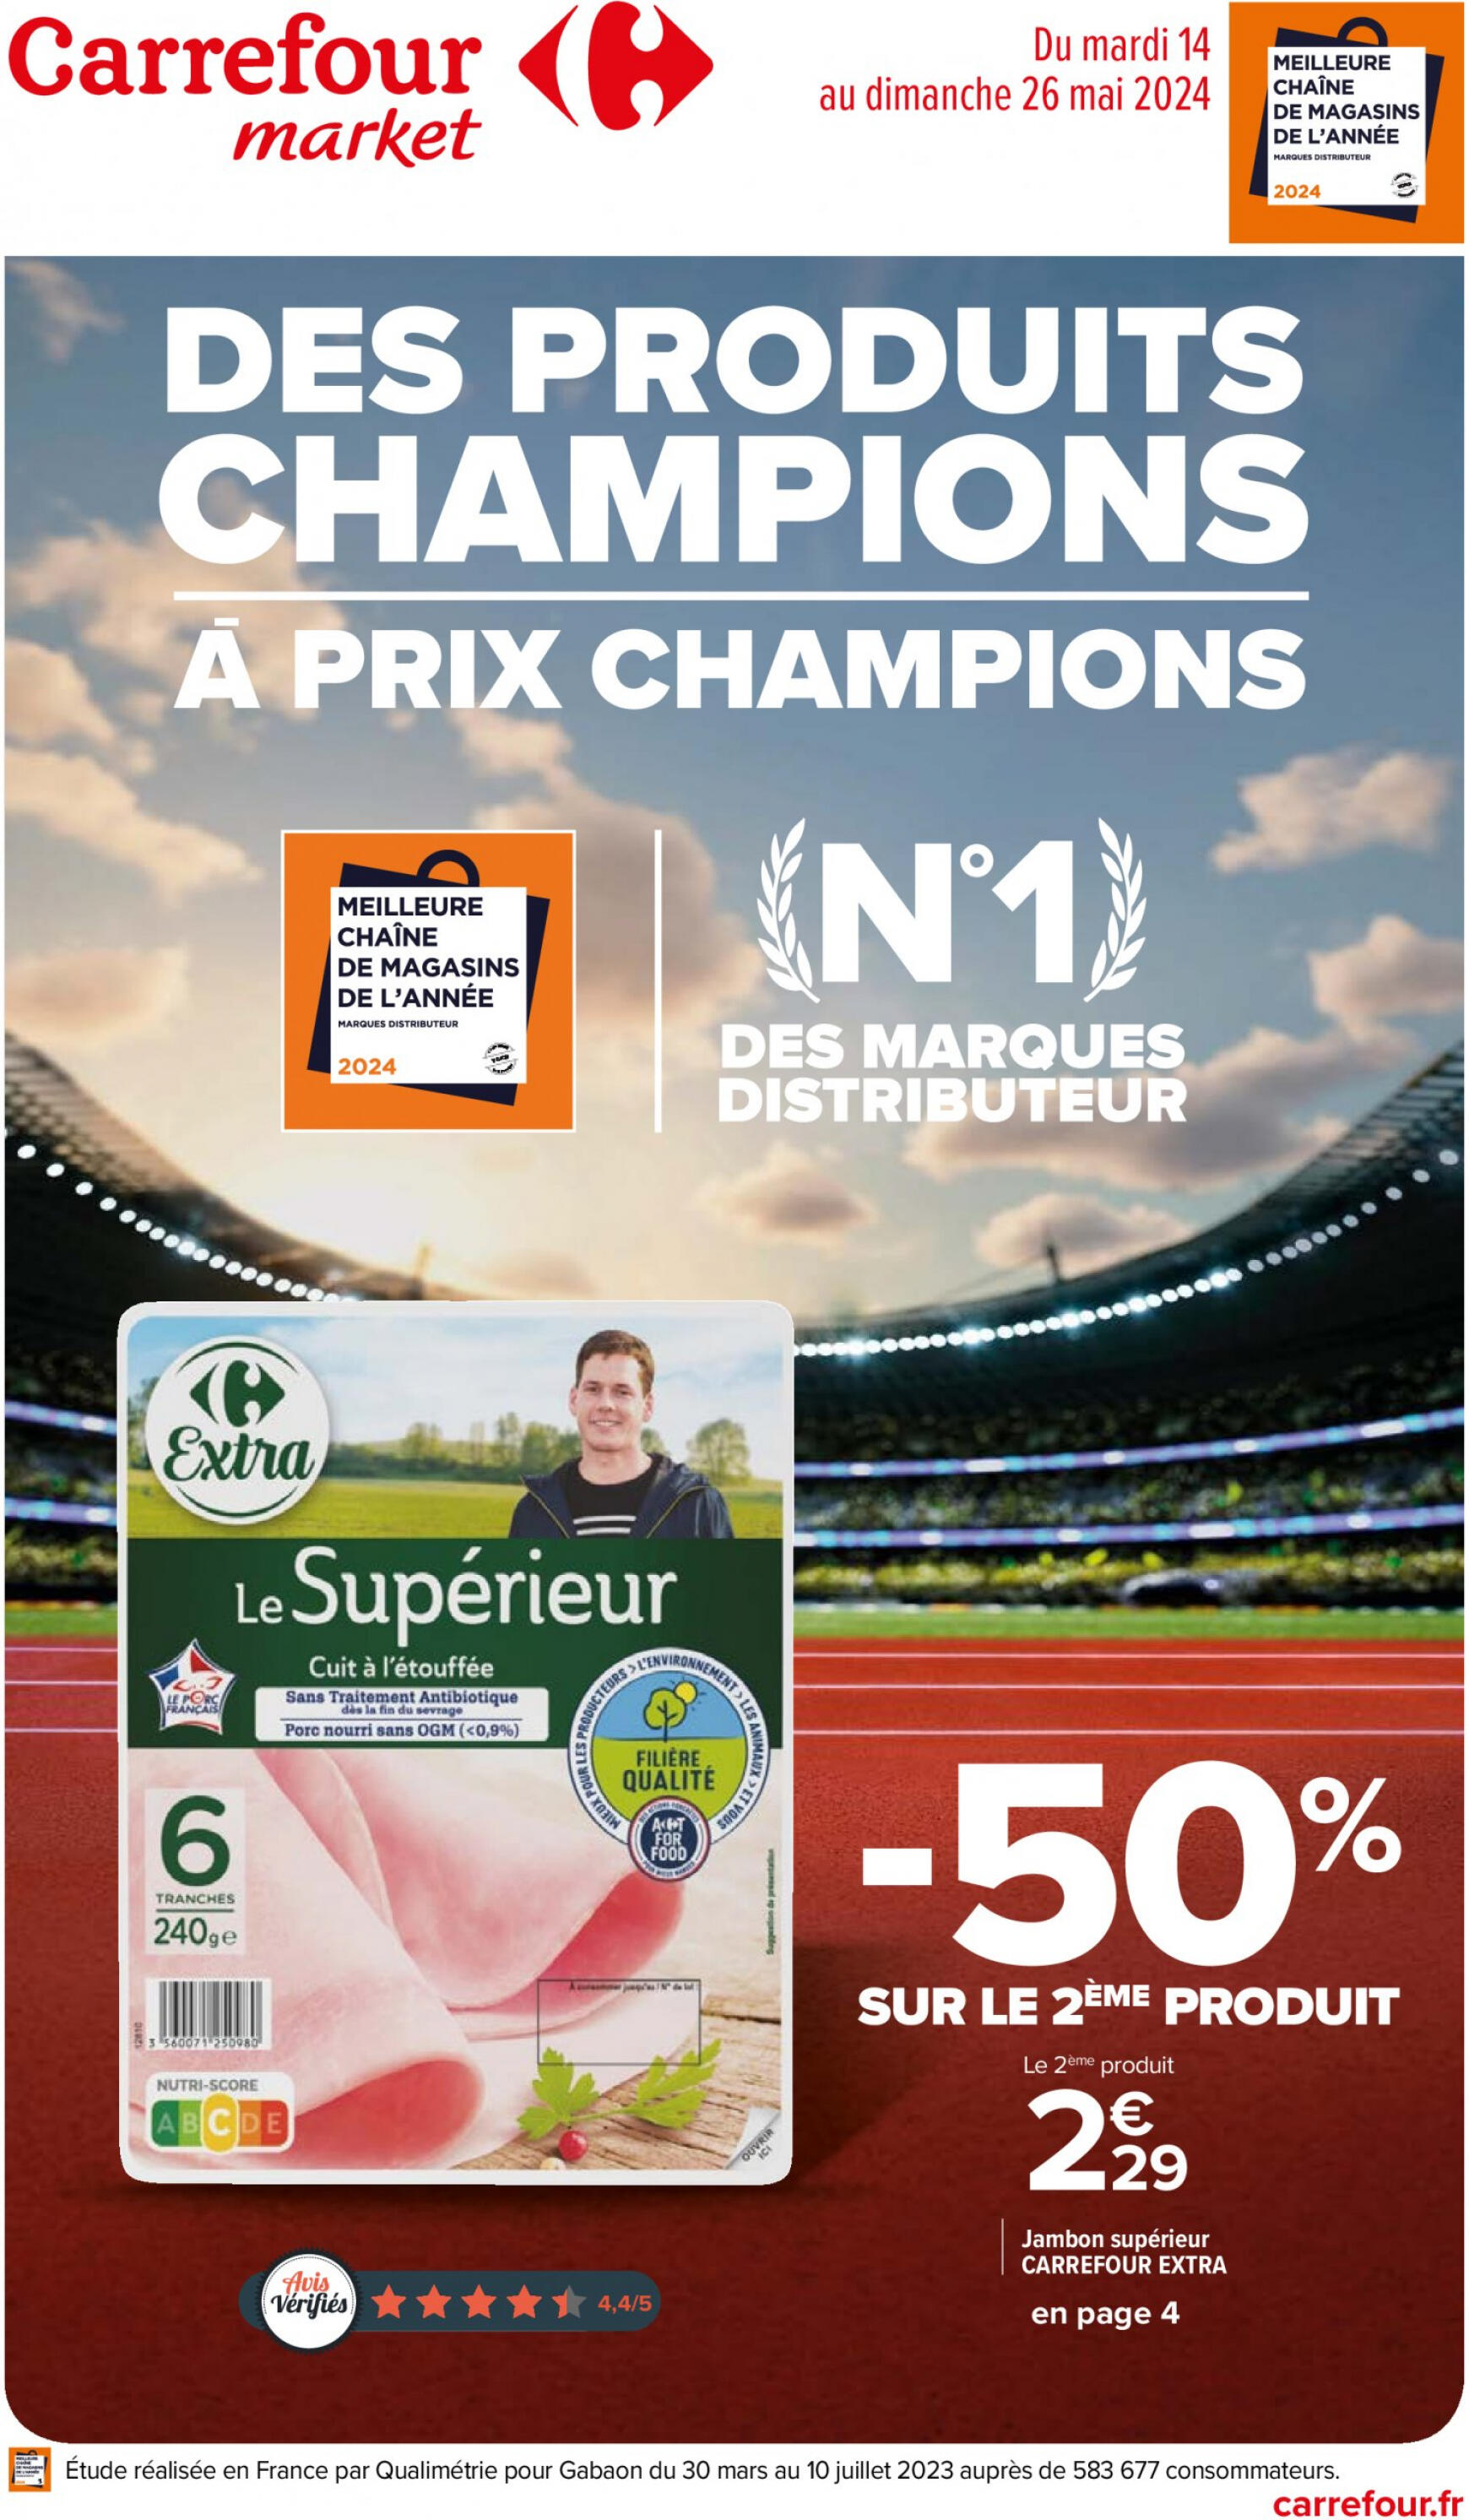 carrefour-market - Prospectus Carrefour Market - Des produits champions à prix champions actuel 14.05. - 26.05. - page: 1